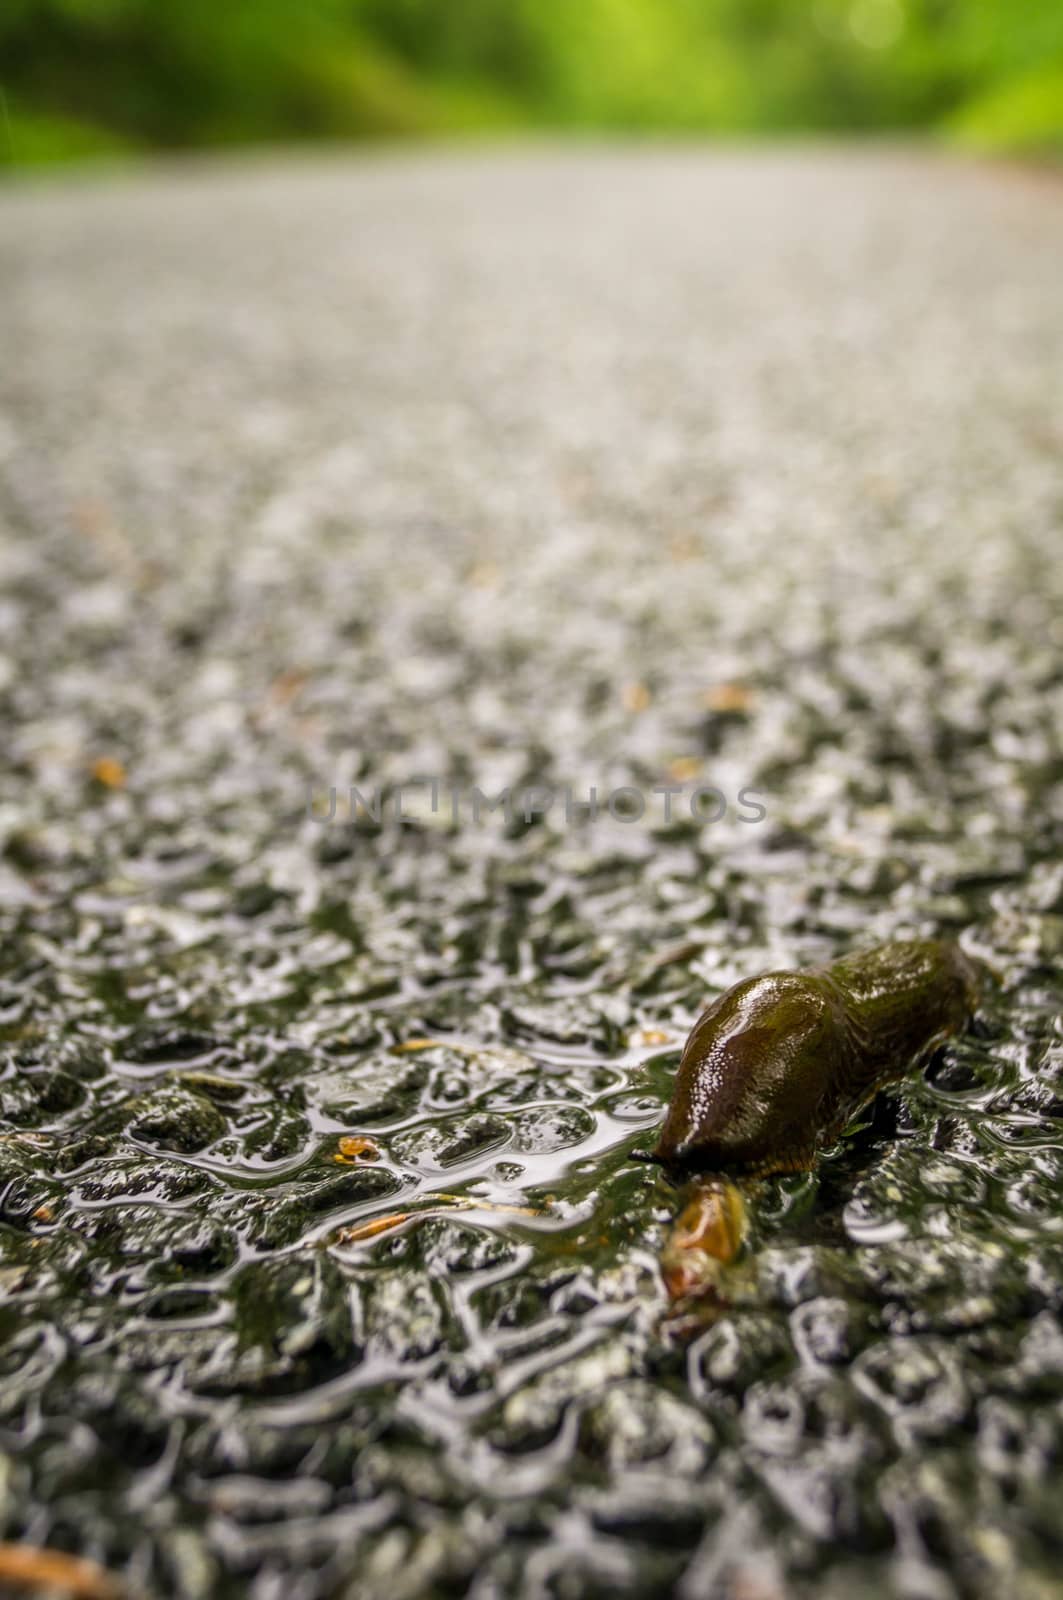 Dead slug on the road just after rain